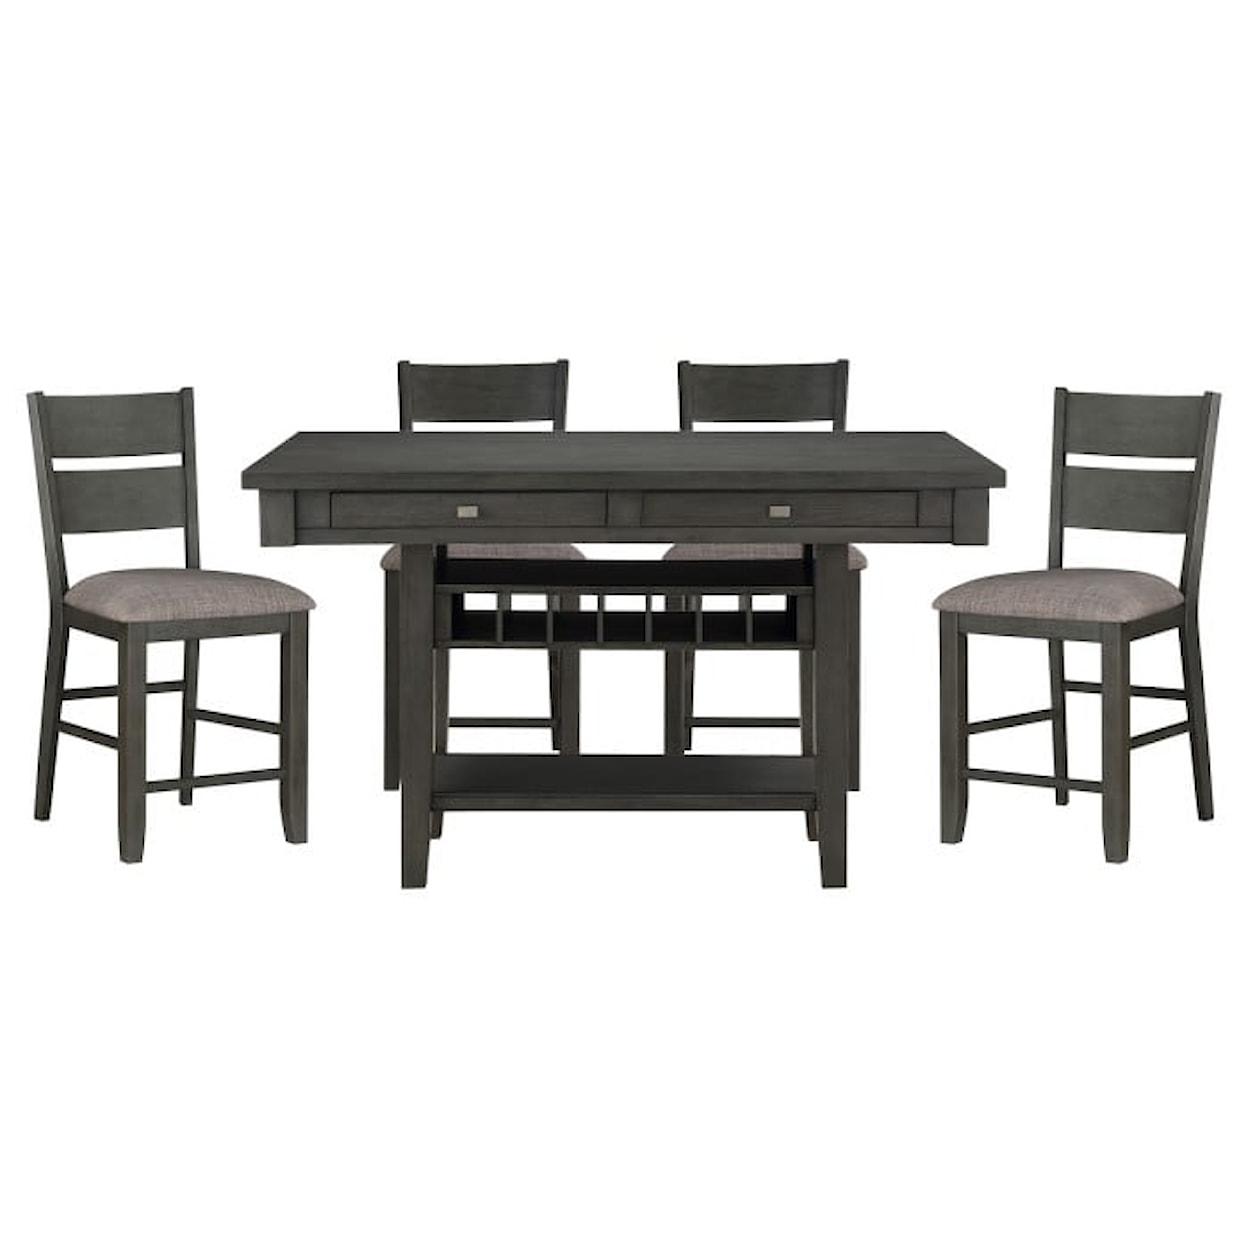 Homelegance Furniture Baresford 5-Piece Counter Dining Set